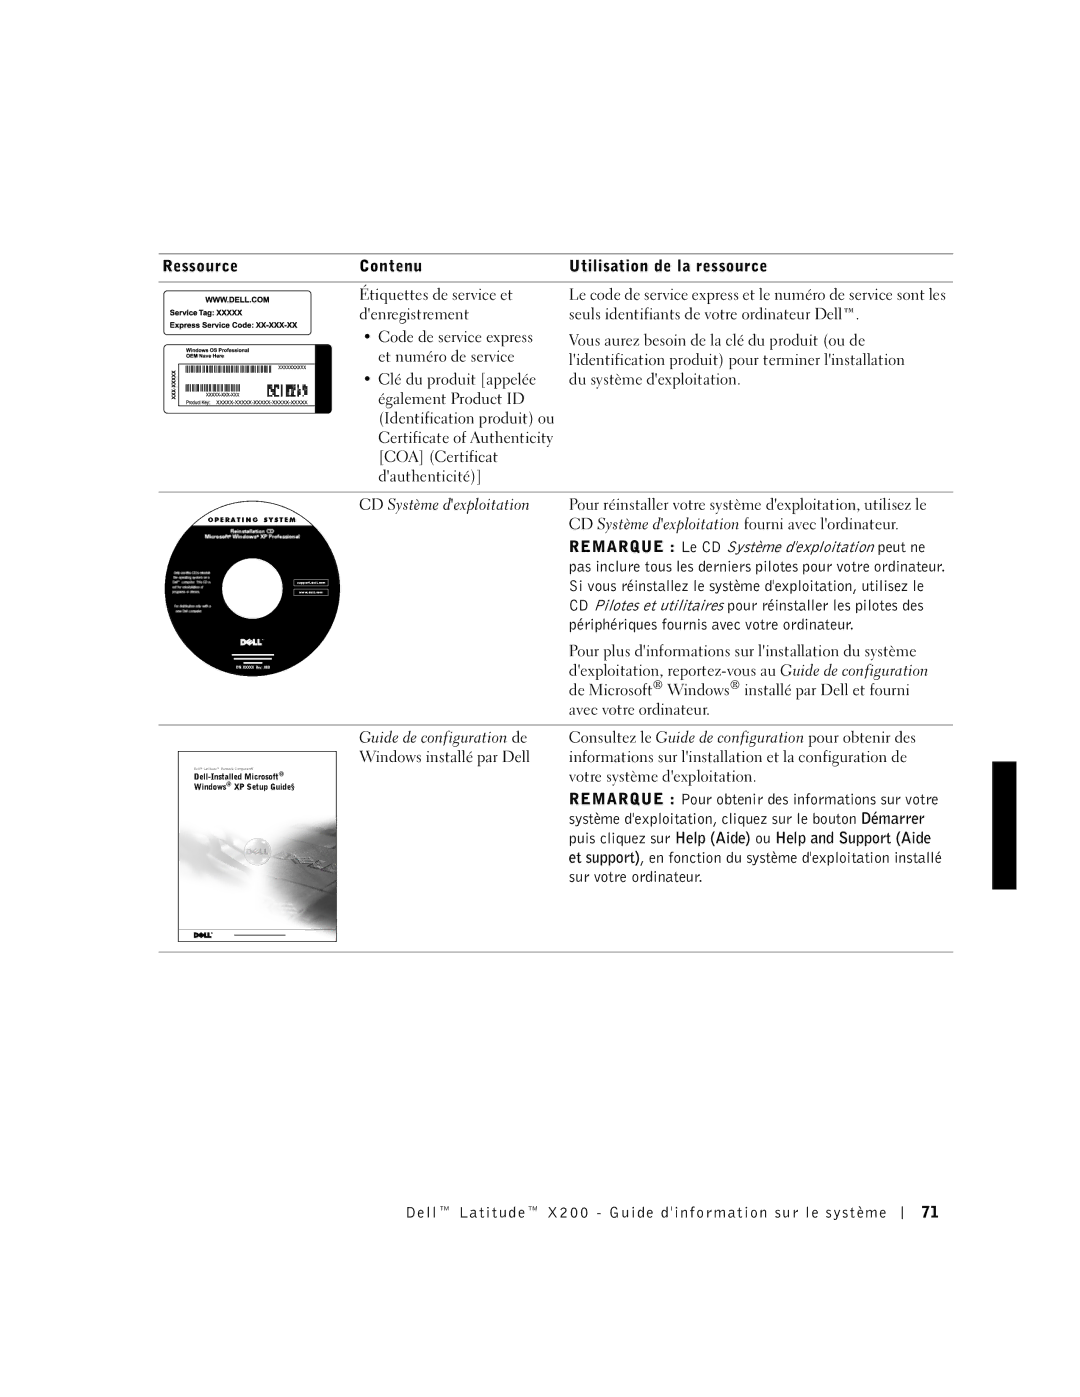 LeapFrog PP03S manual Ressource Contenu Utilisation de la ressource, Remarque Le CD Système dexploitation peut ne 